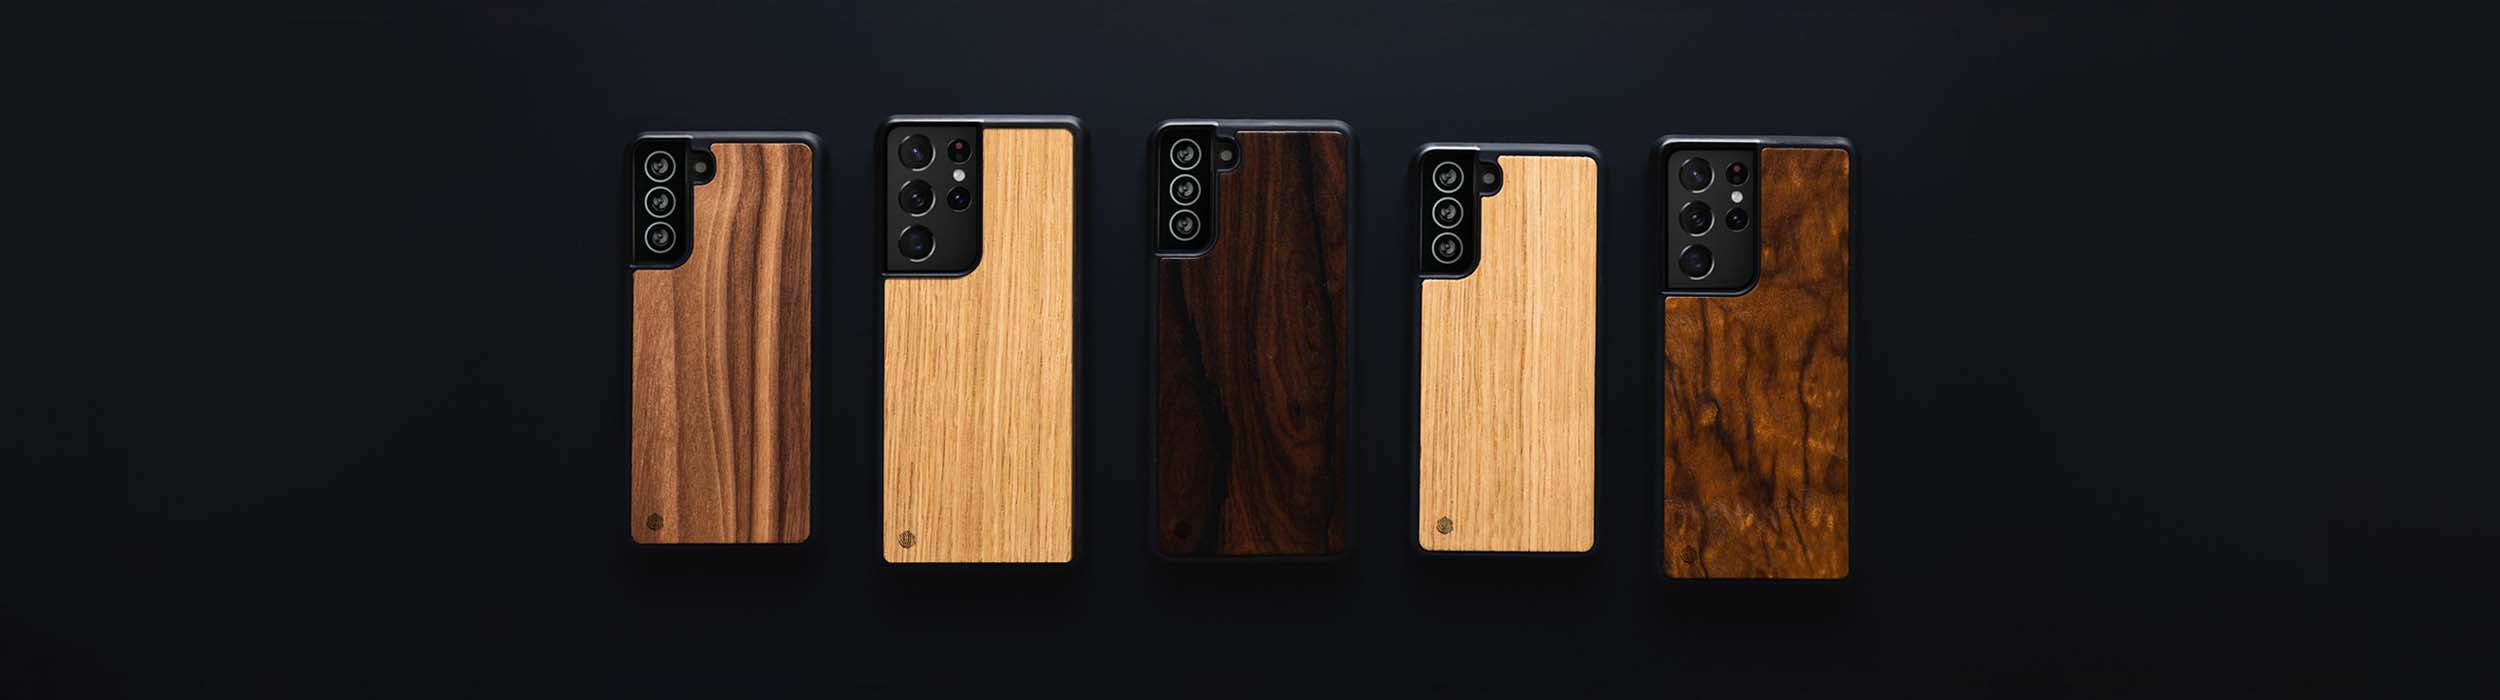 Samsung Galaxy S20 FE Handyhüllen aus Holz